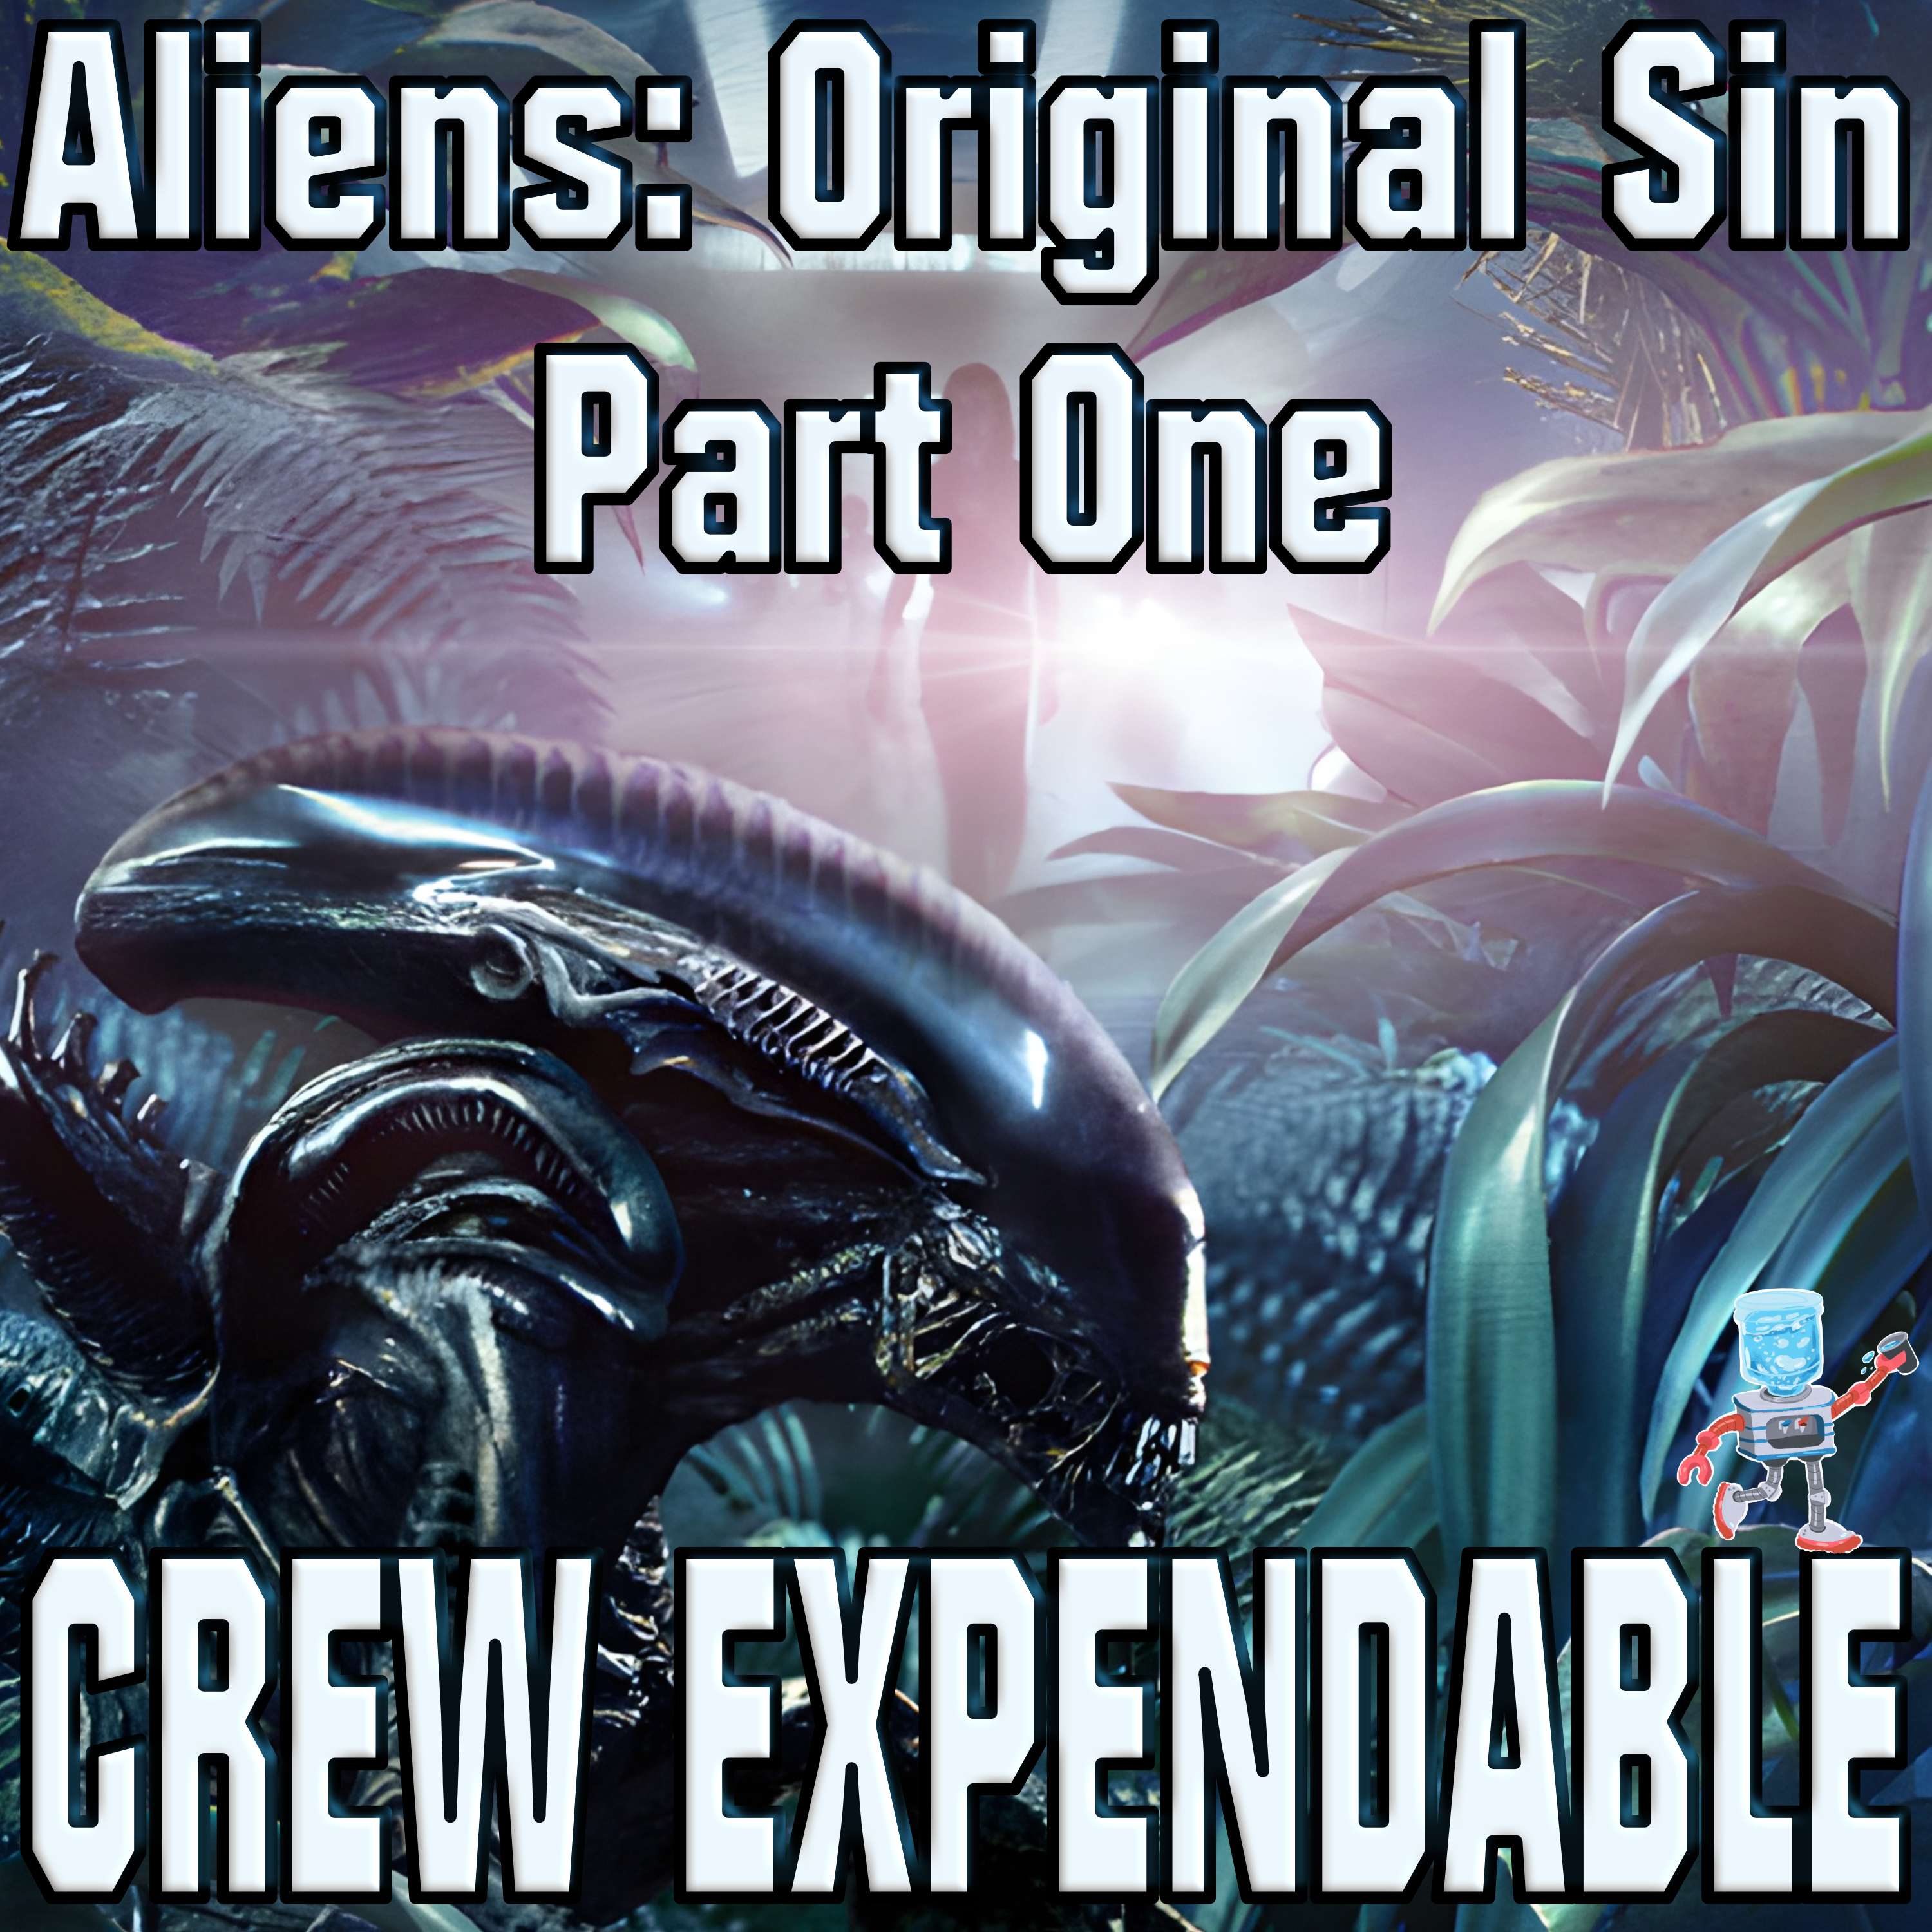 Discussing Aliens: Original Sin [Part One]